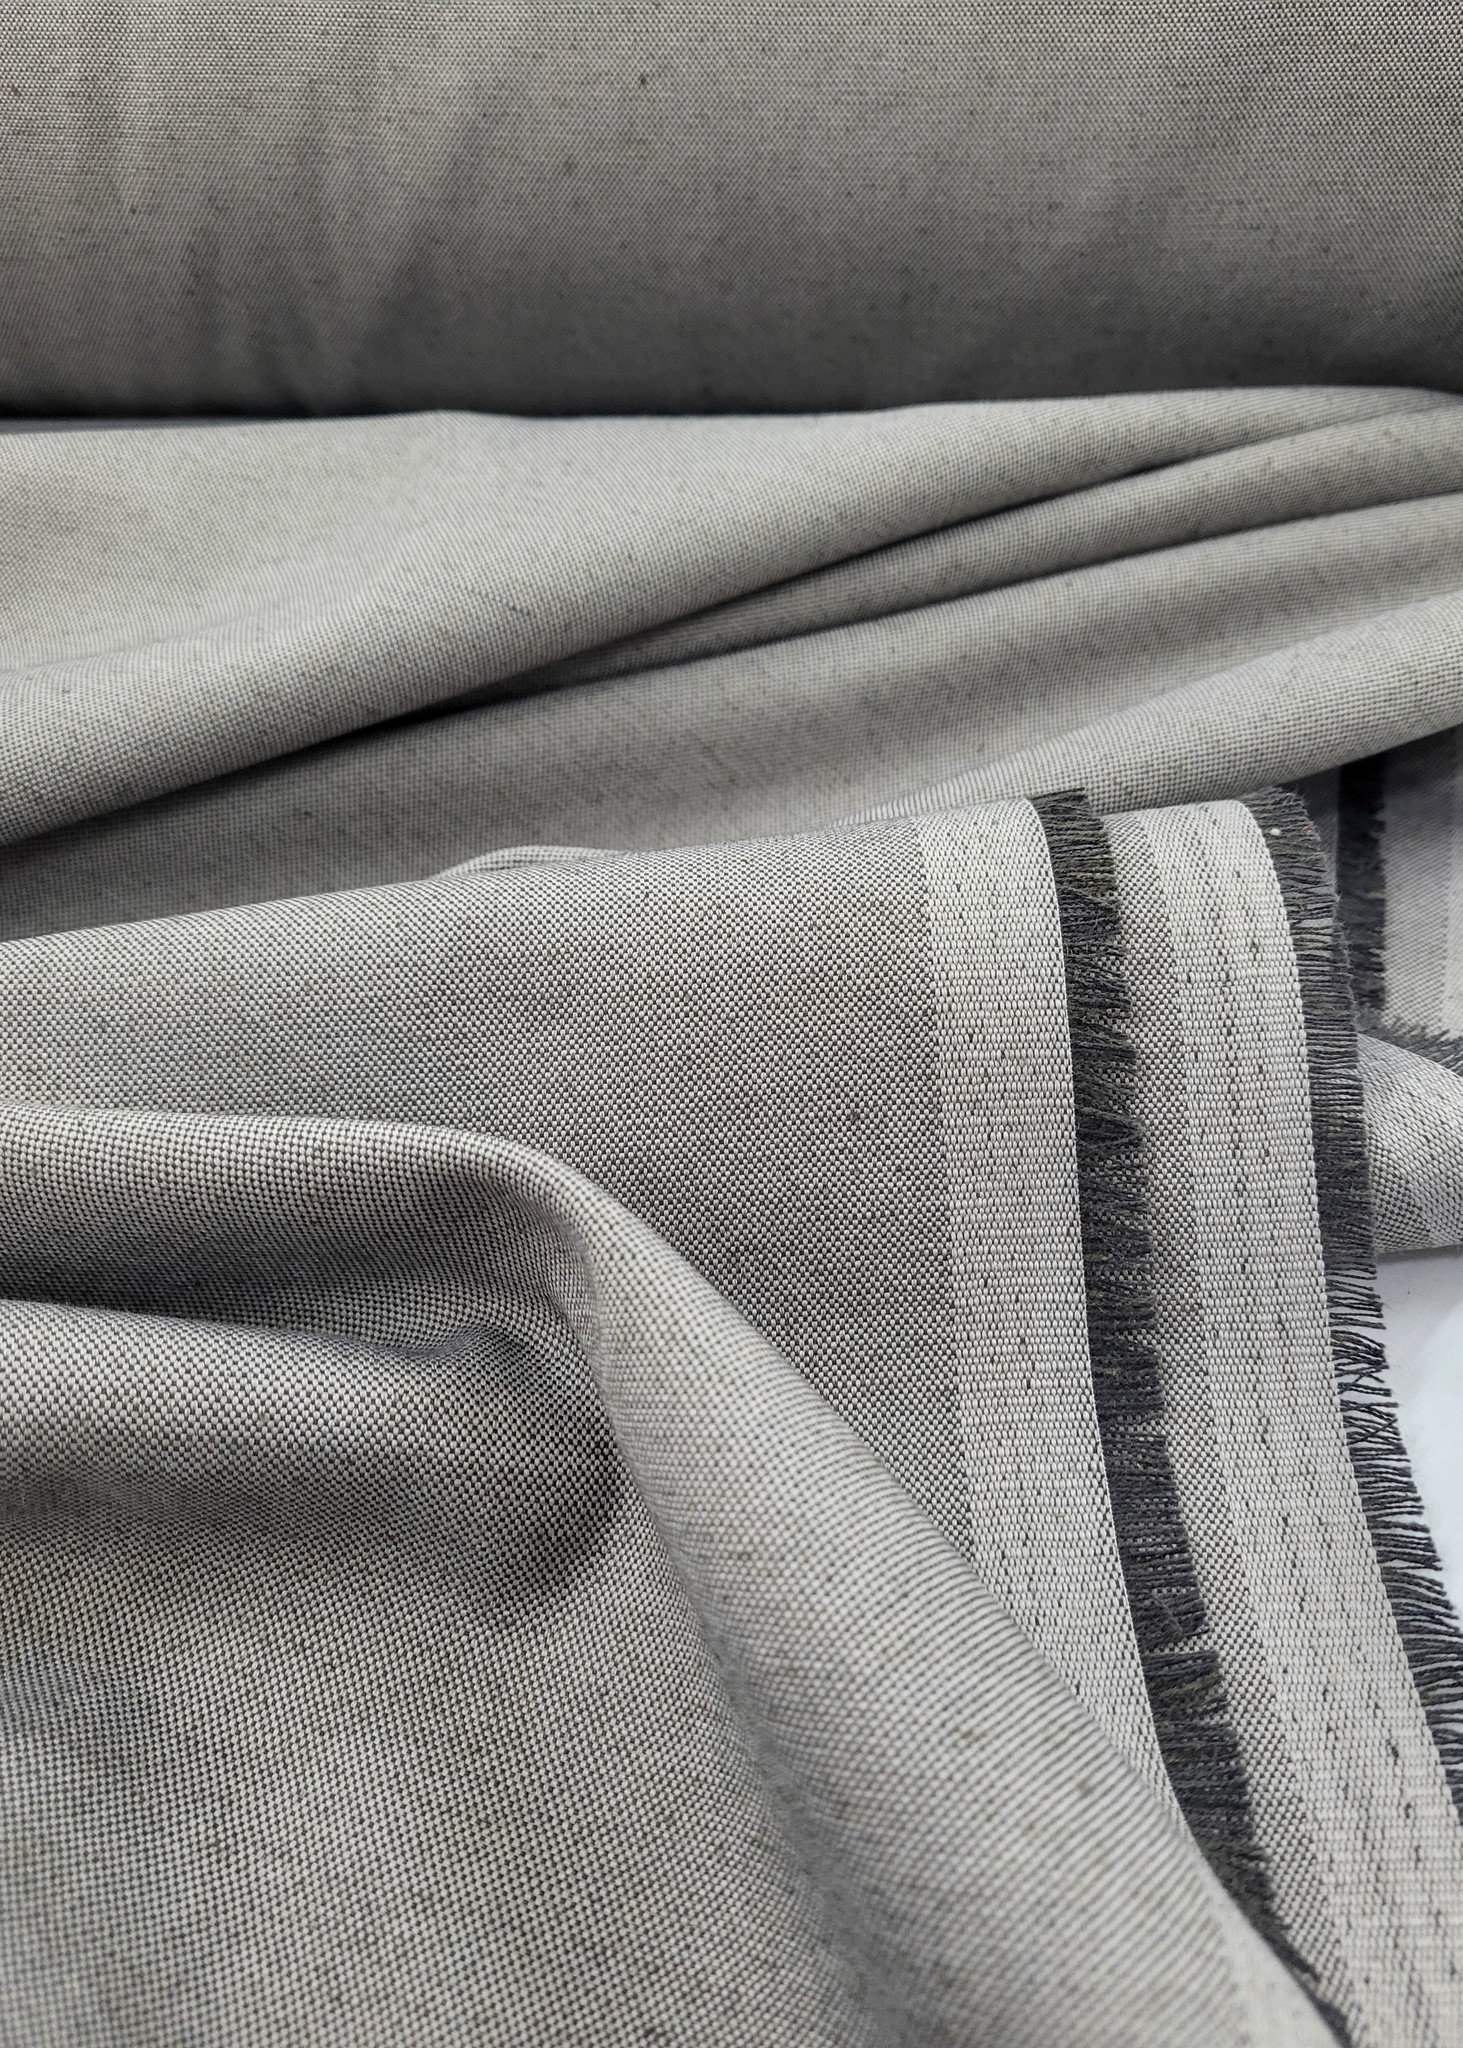 Mooie grijze stof op 280 cm breedte ideaal voor gordijnen of interieur - Madeline de stoffenmadam